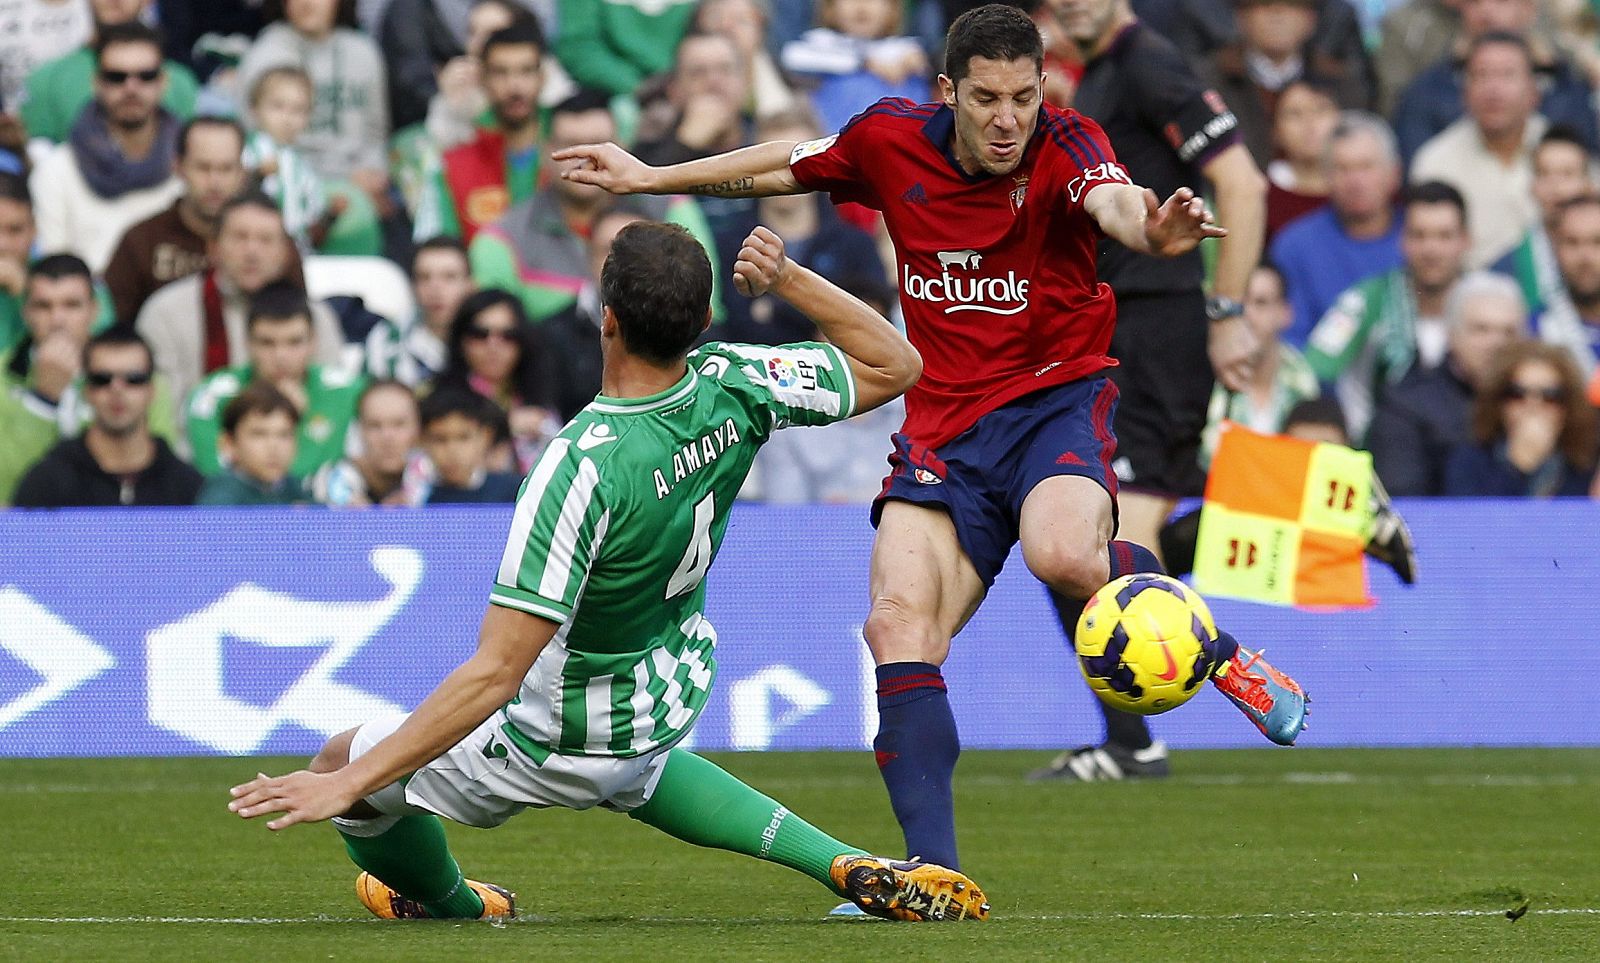 El defensa del Betis Antonio Amaya y el centrocampista del Osasuna Álvaro Cejudo luchan por el balón.